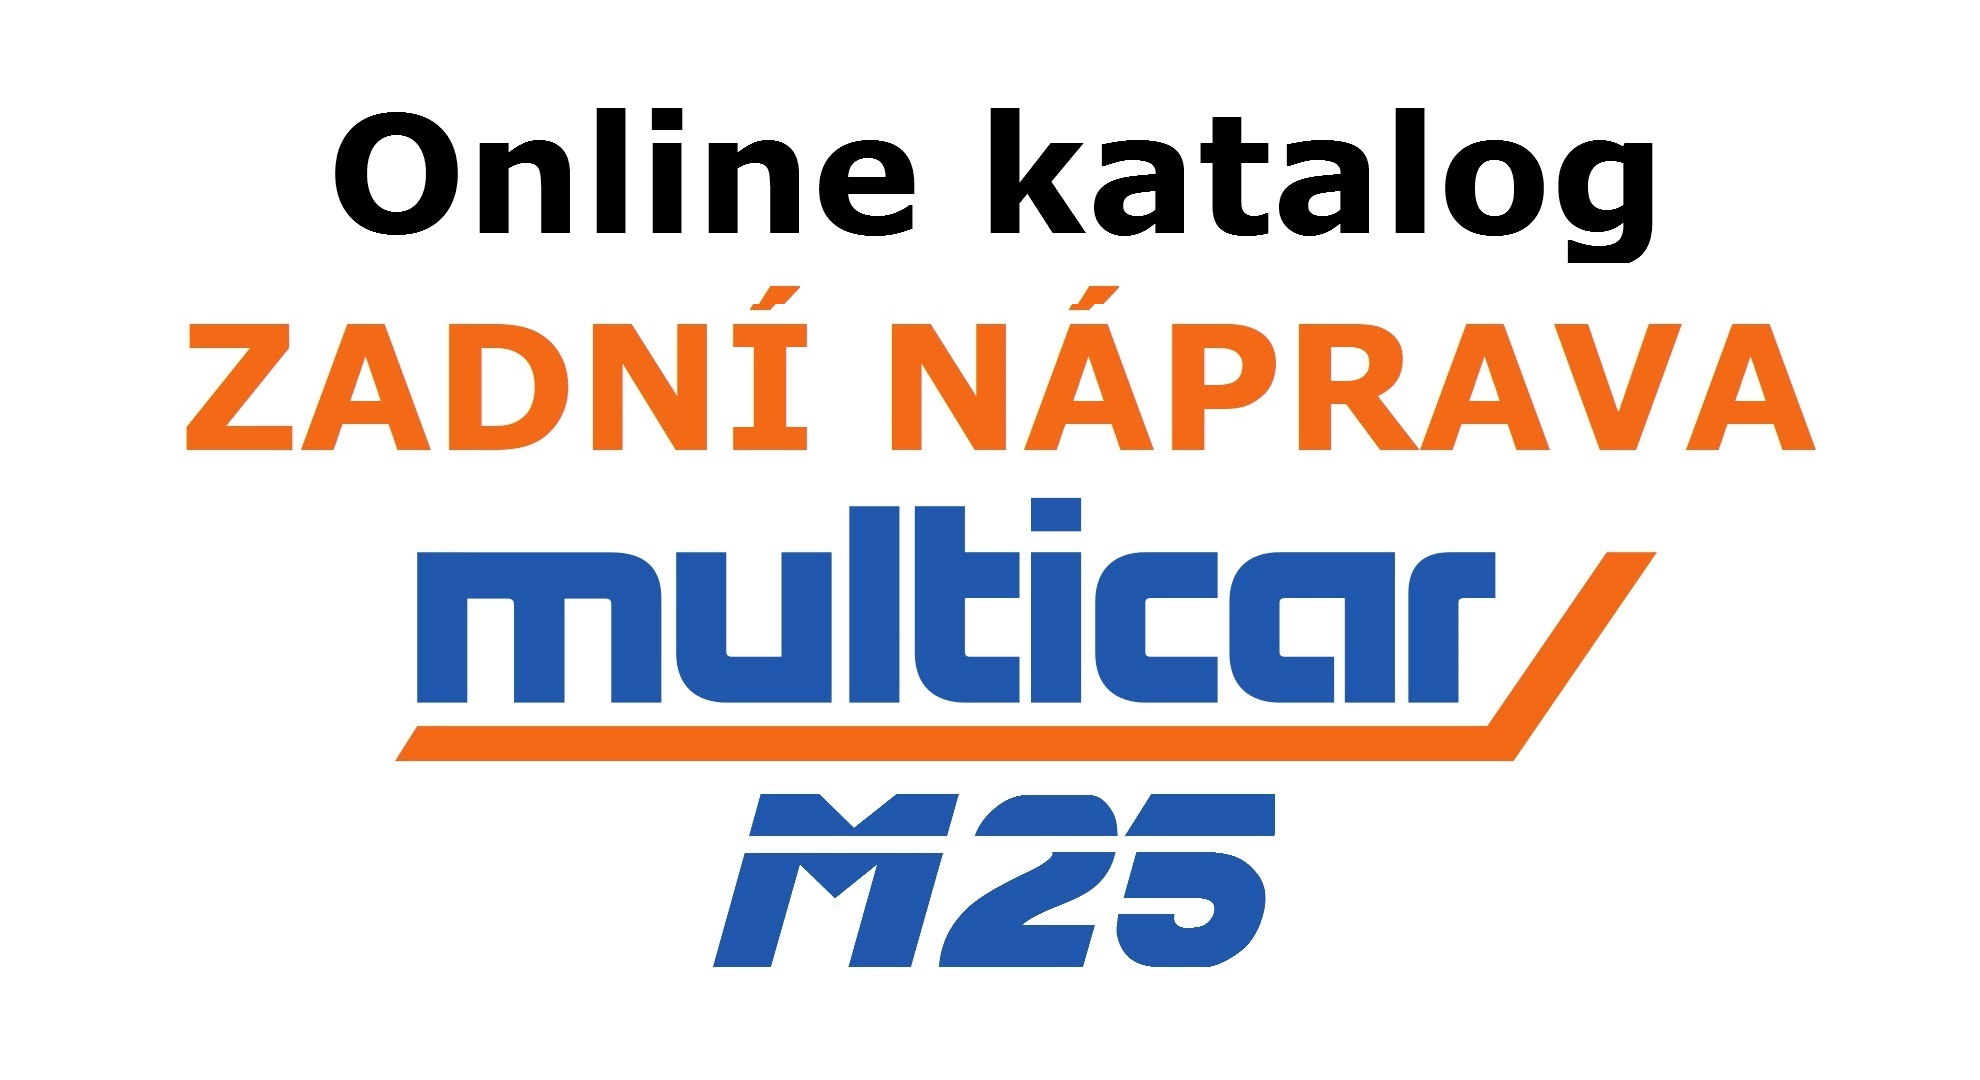 ! Katalog Multicar M25 - Zadní náprava